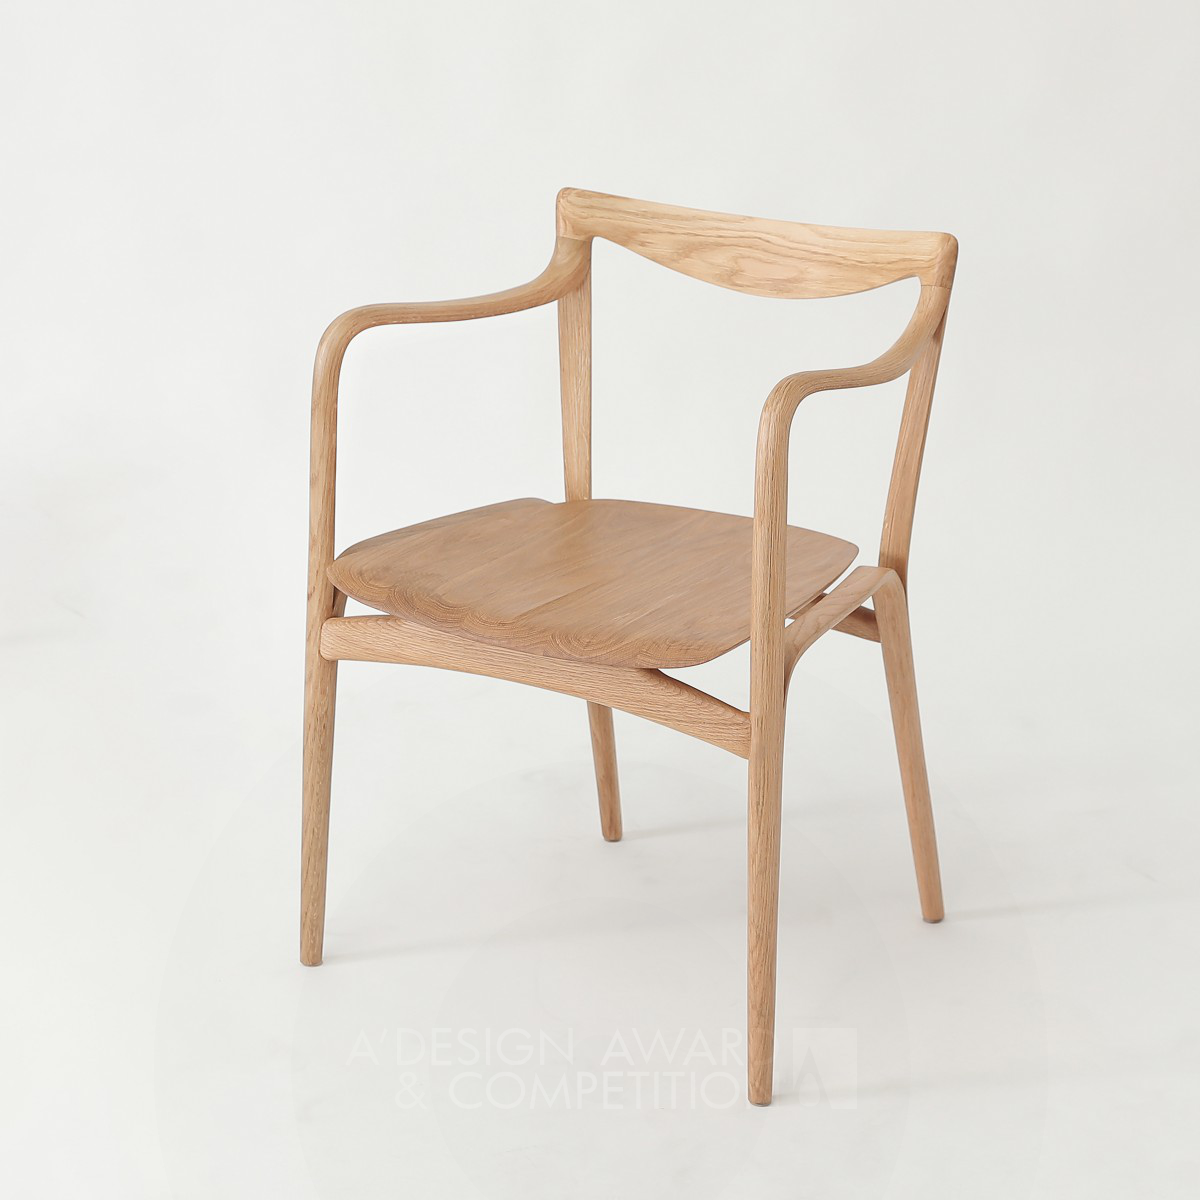 笑椅：Xu Le的设计让家具也微笑